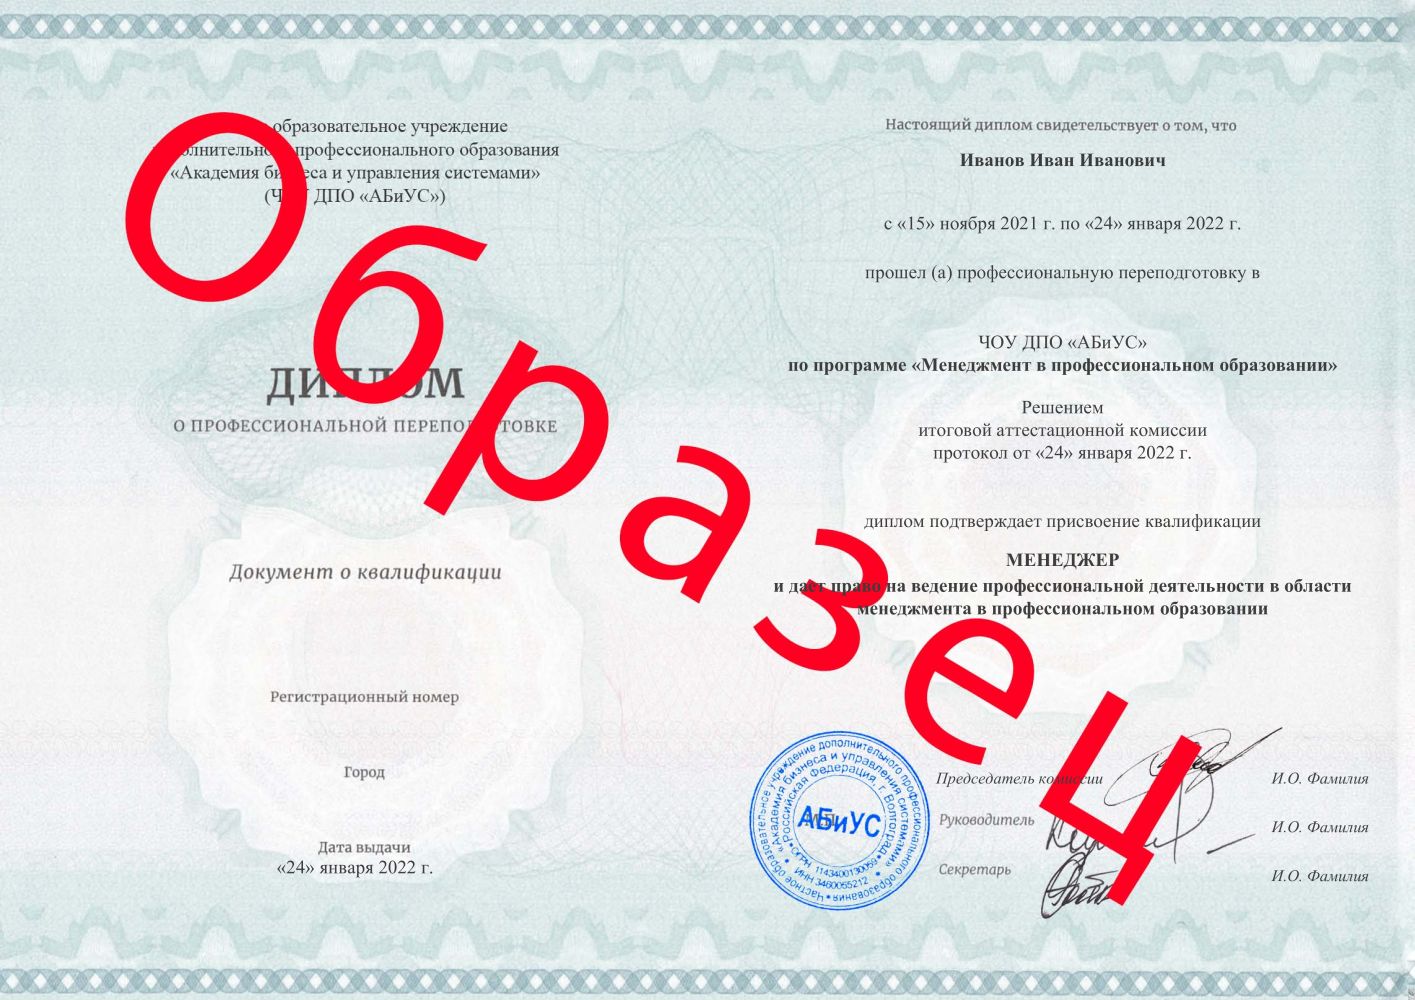 Диплом Менеджмент в профессиональном образовании 260 часов 9200 руб.